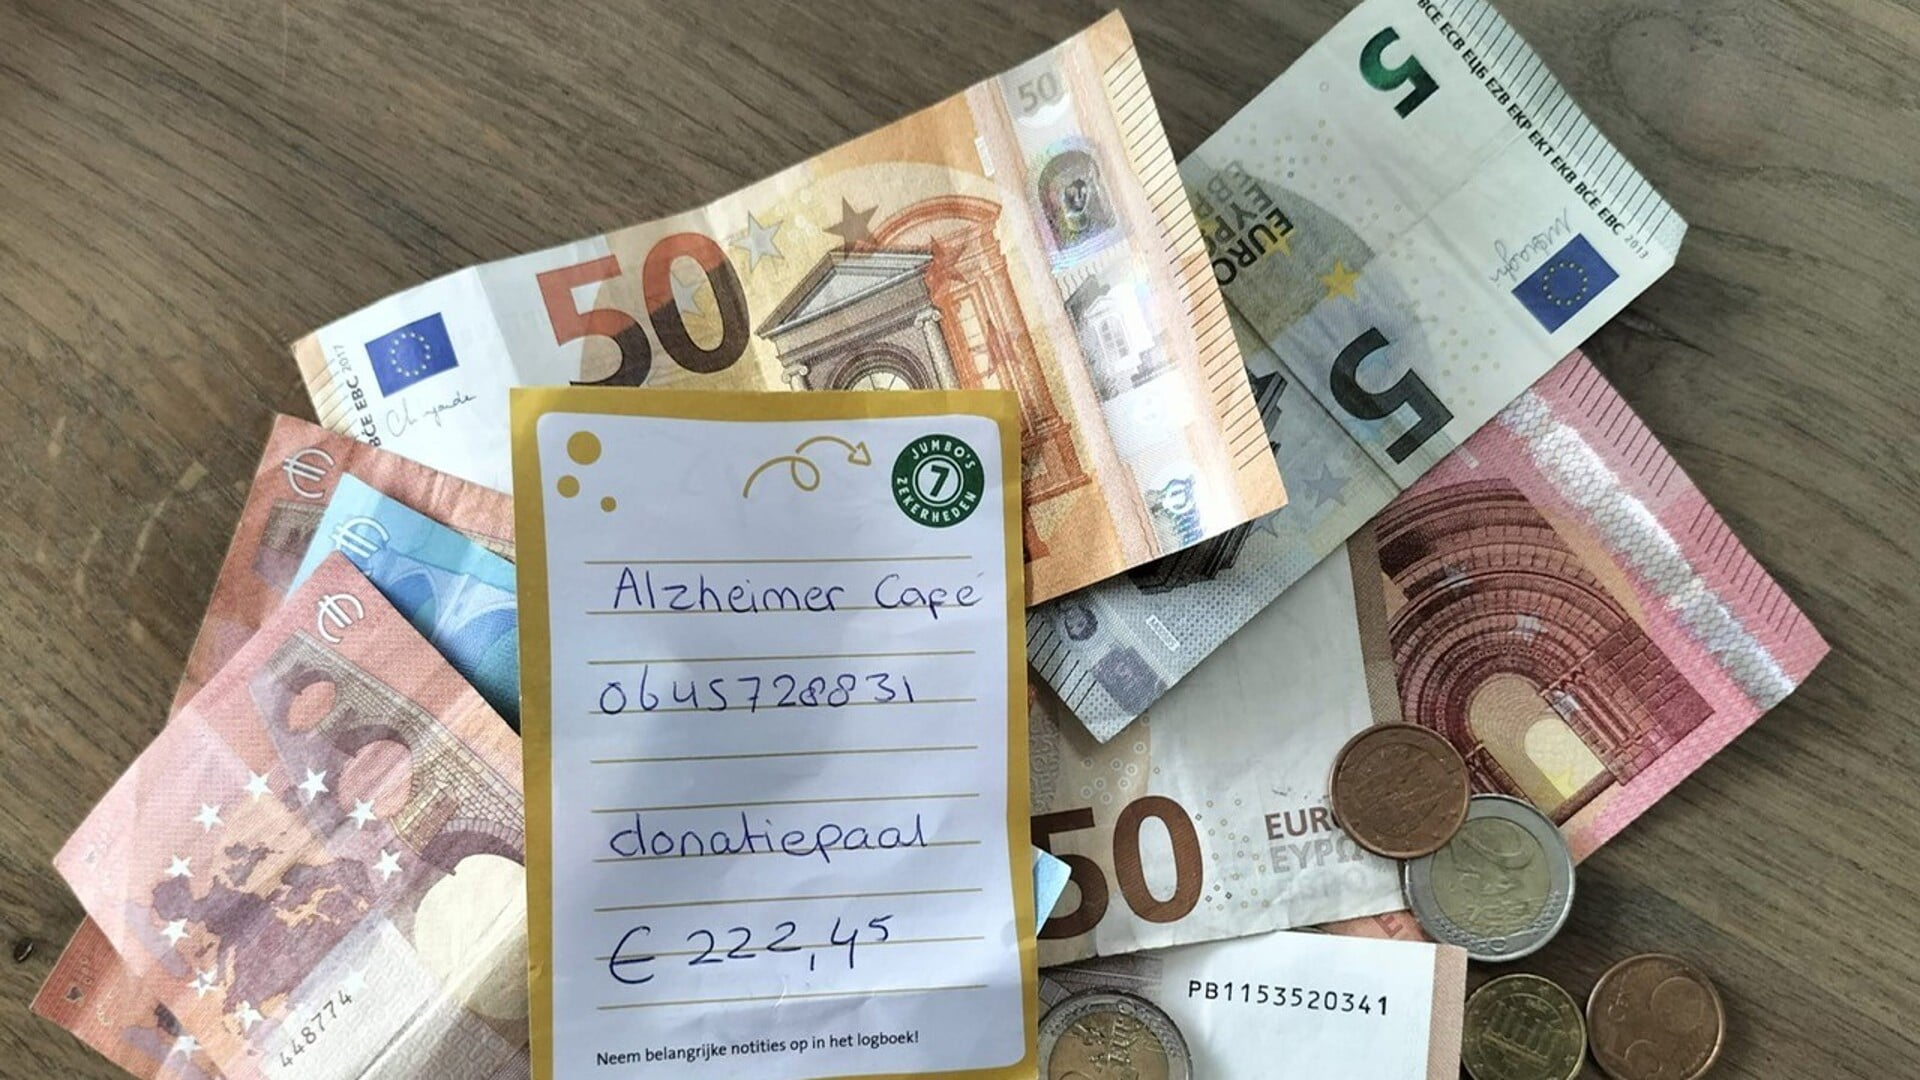 Flessengeldactie voor het Alzheimer Café Lingewaard in de Jumbo. (foto: Viëtor)